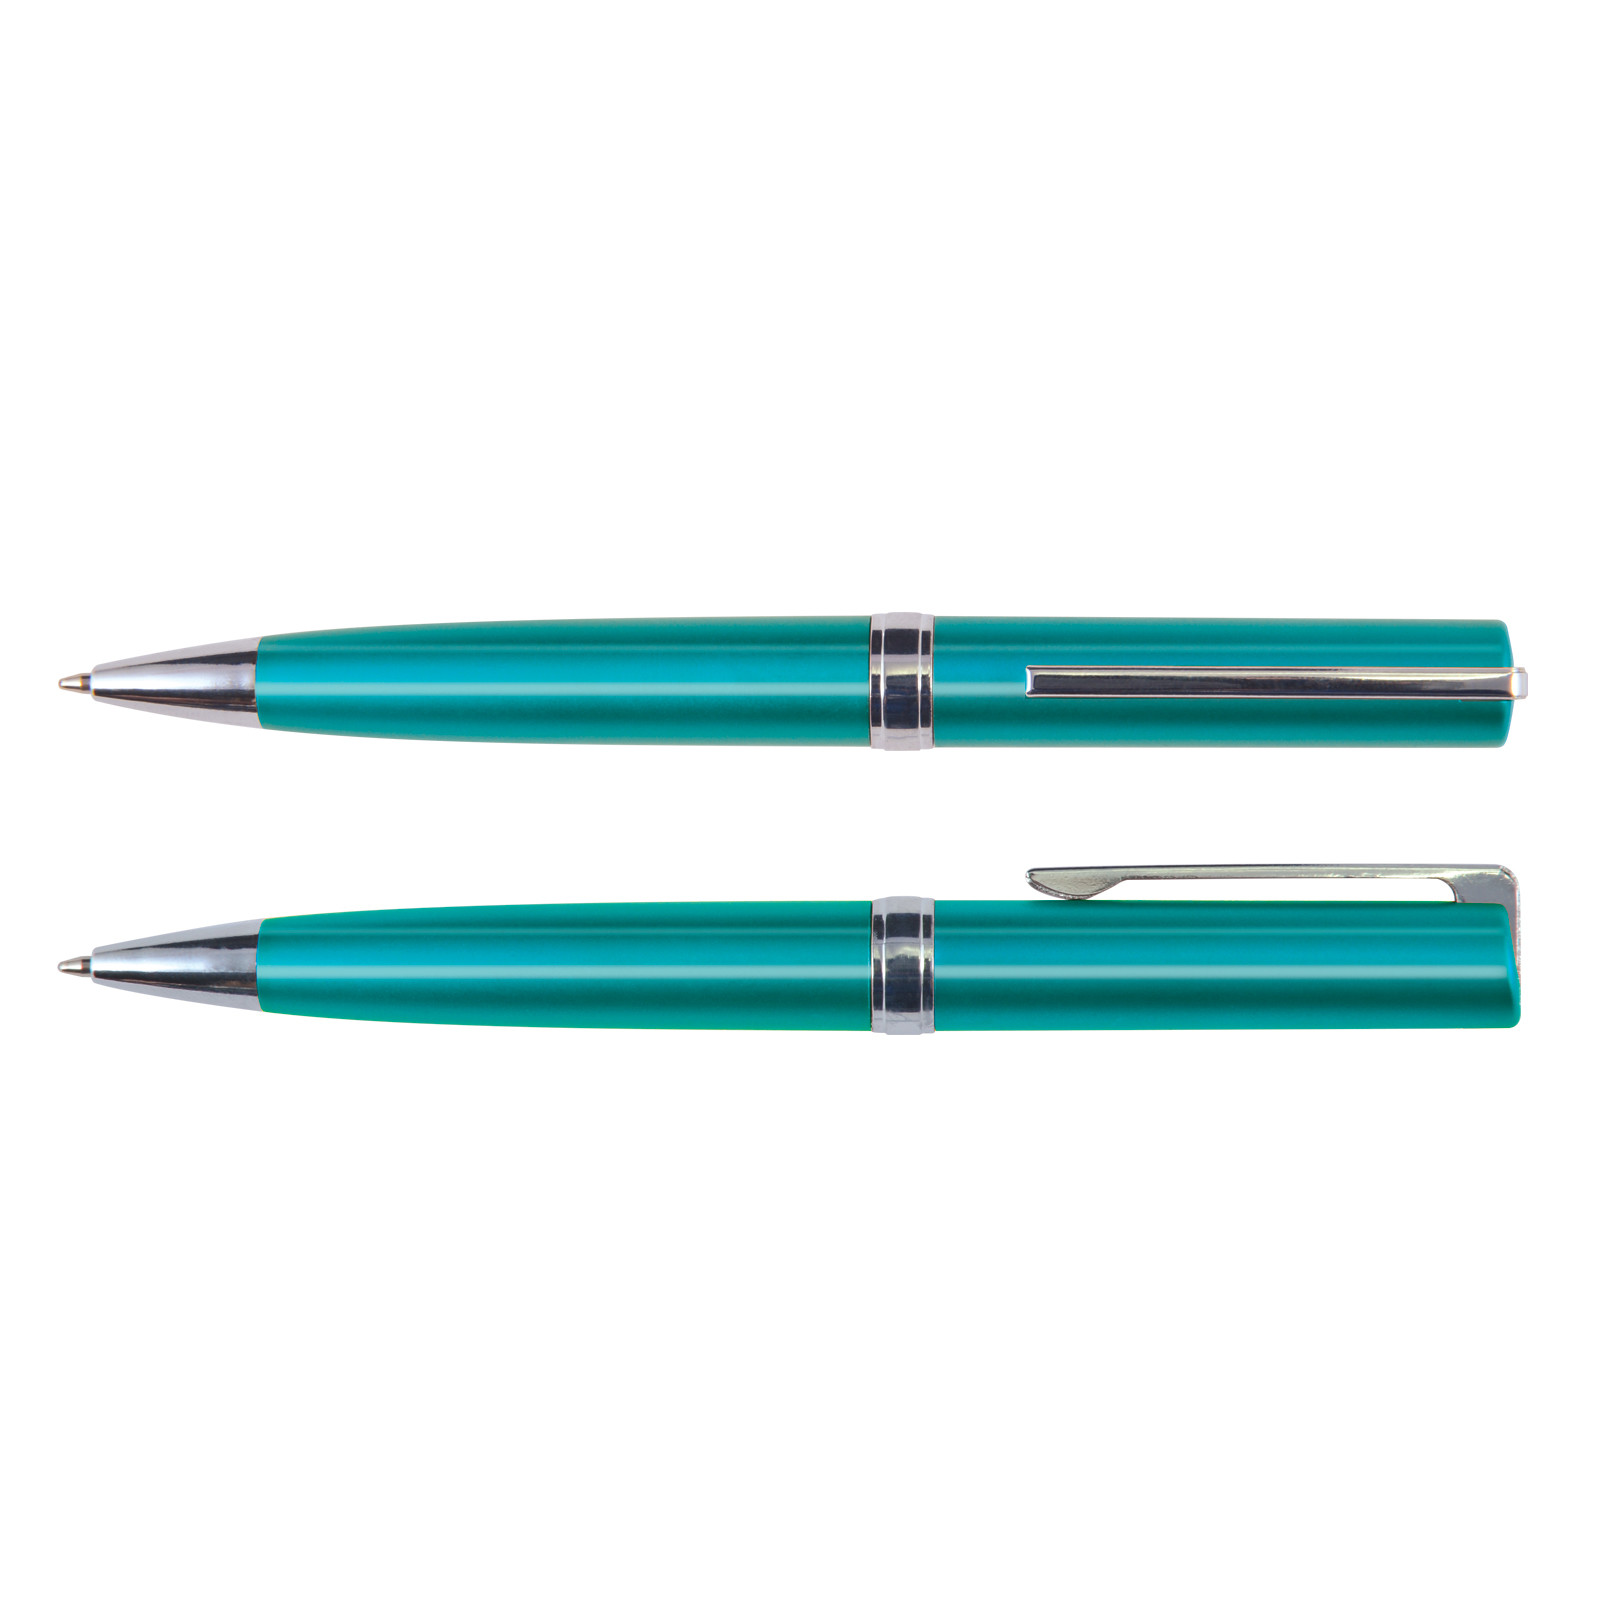 LL0469 Gemini Metallic Ballpoint Pen